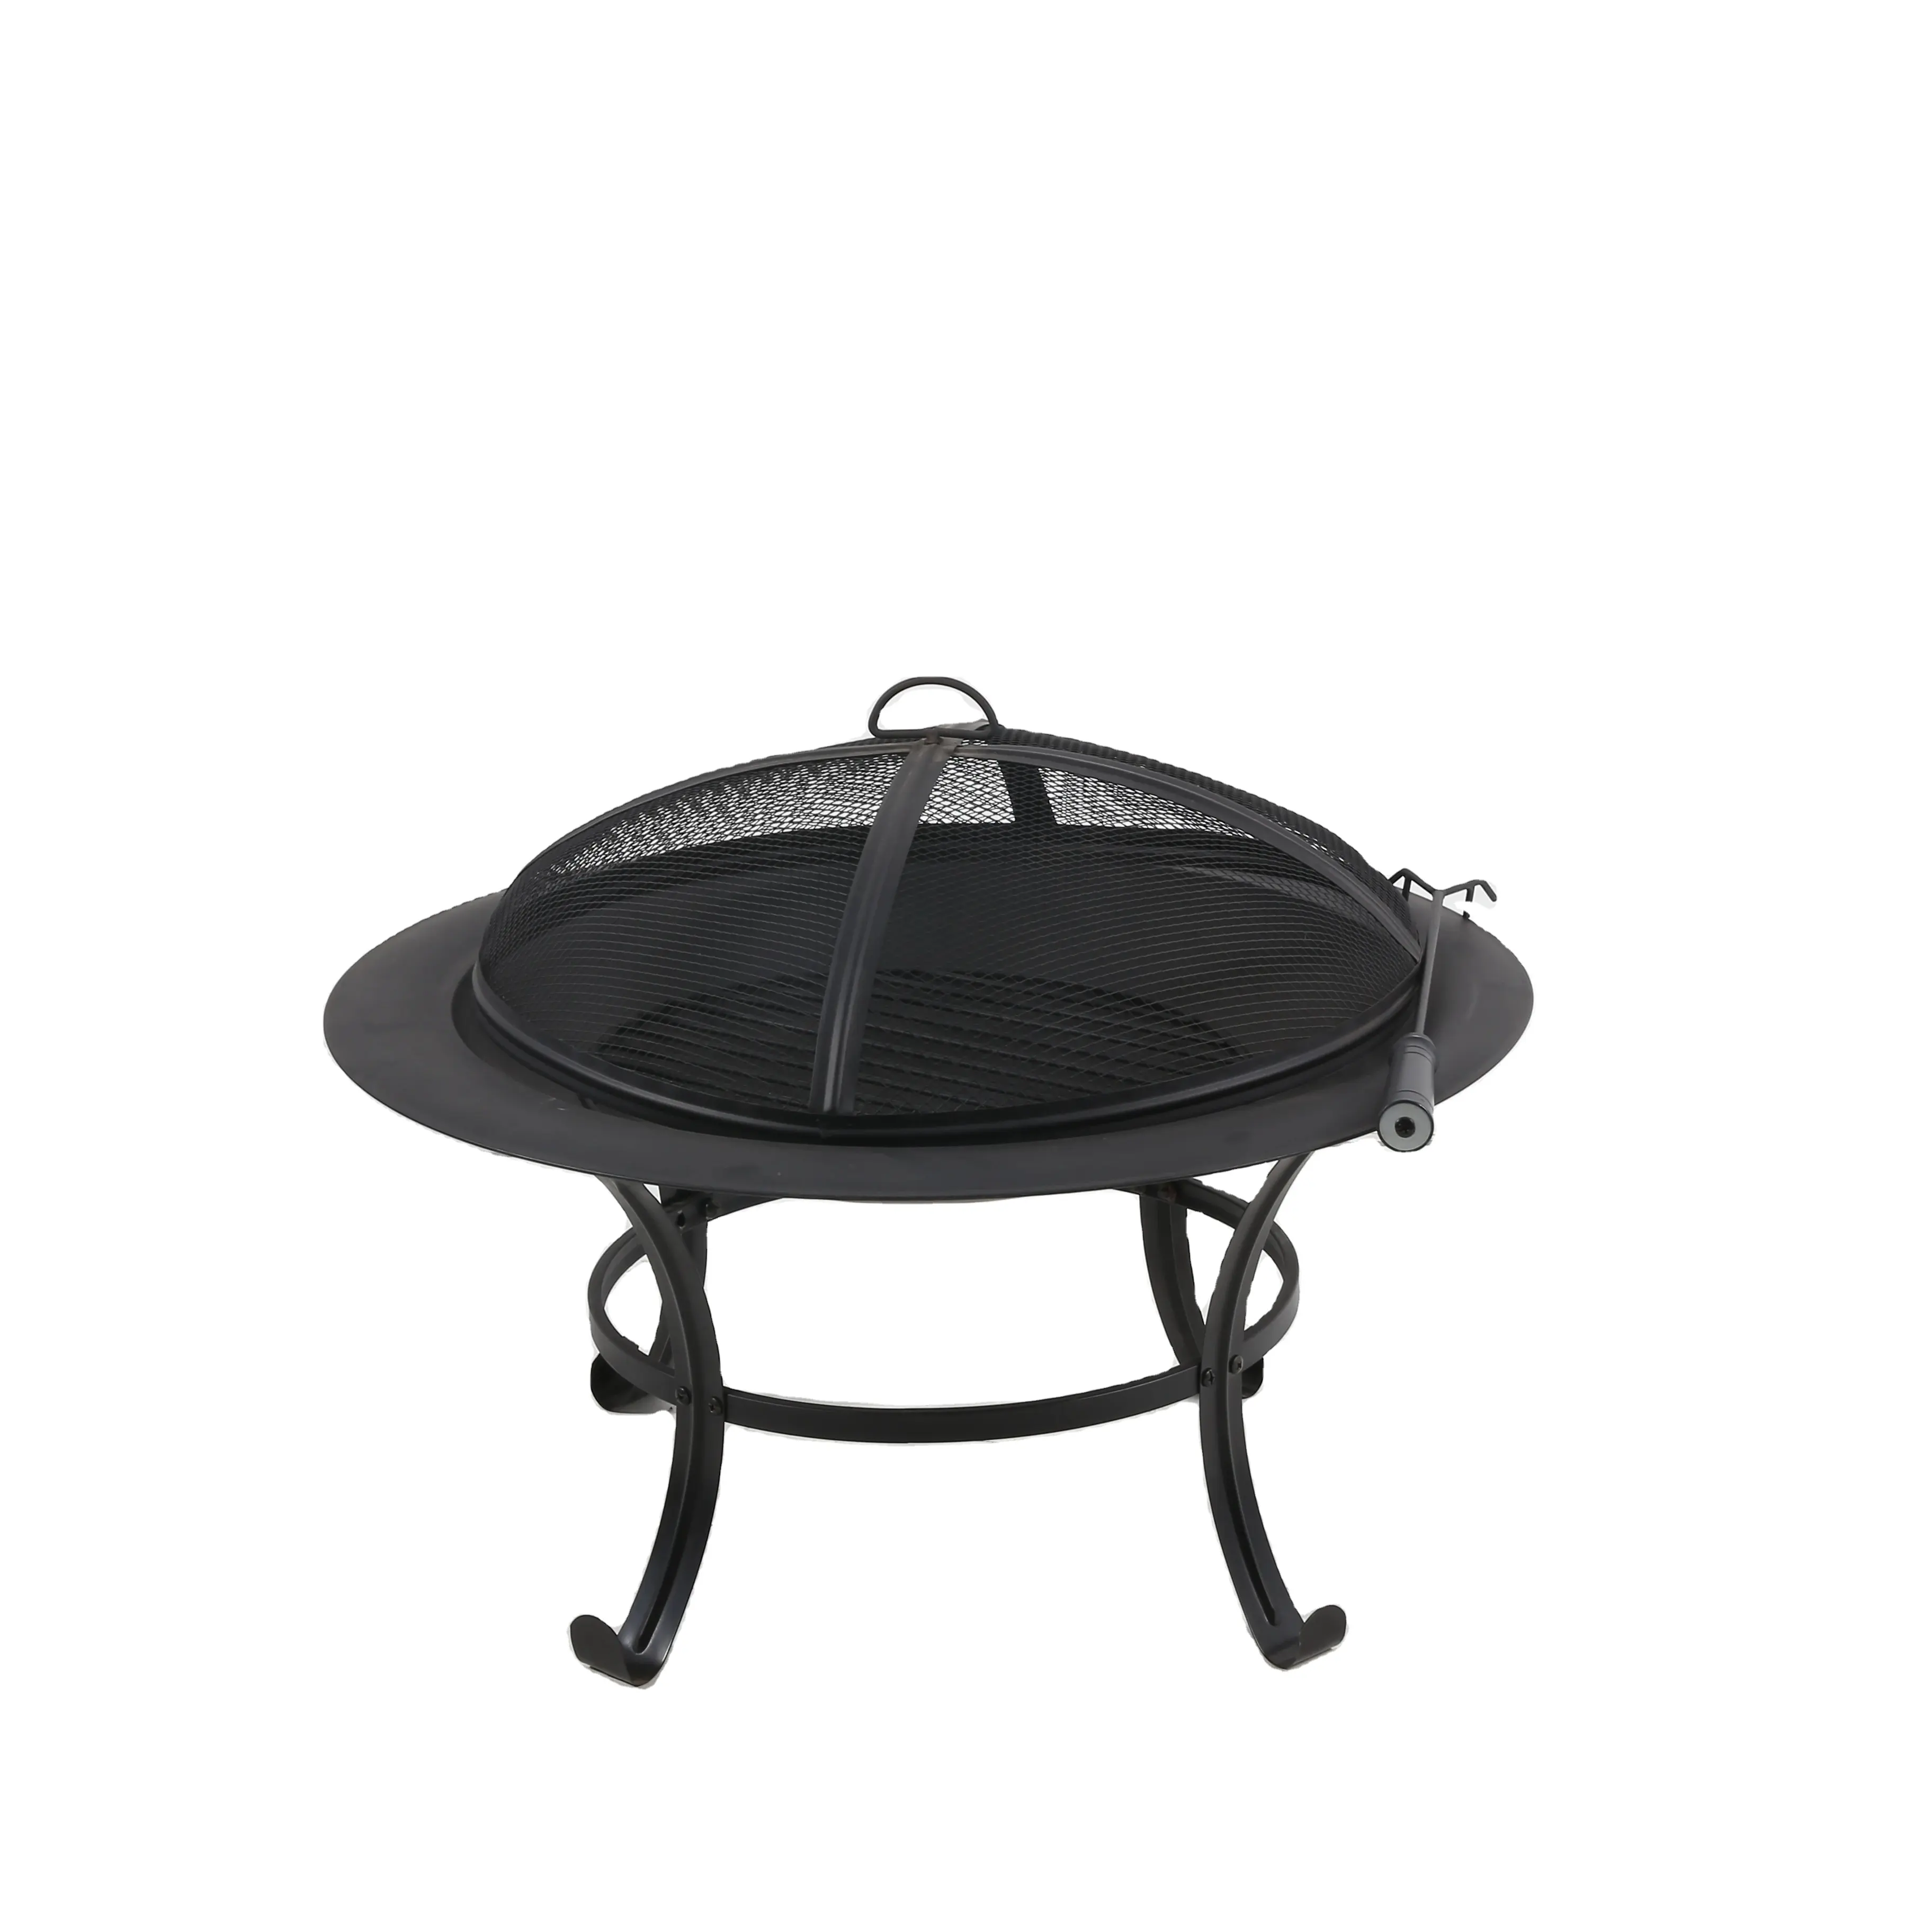 Venda quente 3 Em 1 Outdoor Fire Pit Firepit Table